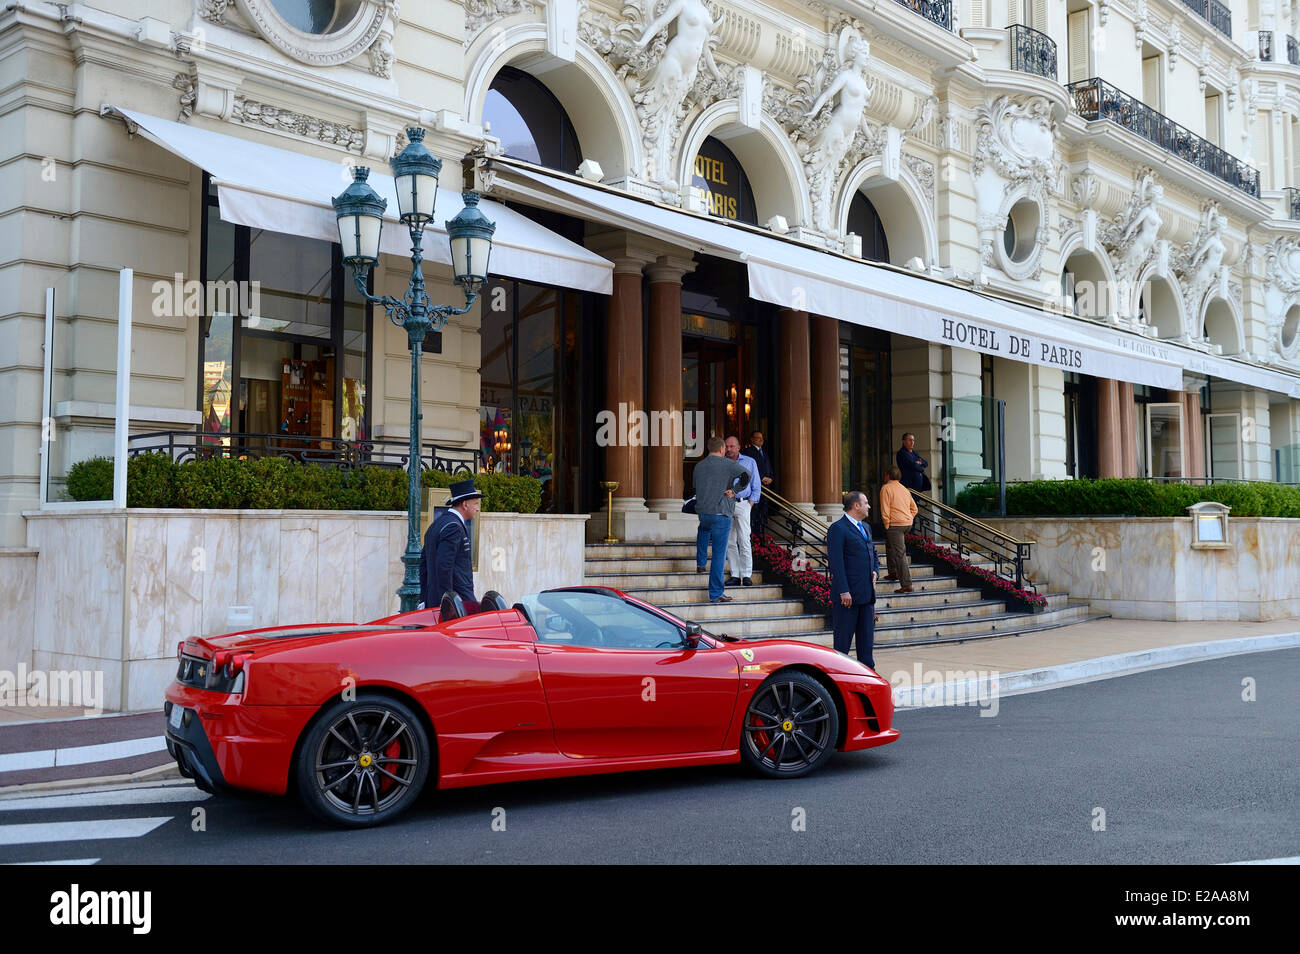 Principality of Monaco, Monaco, Monte-Carlo, Ferrari parked outside the Hotel de Paris Stock Photo